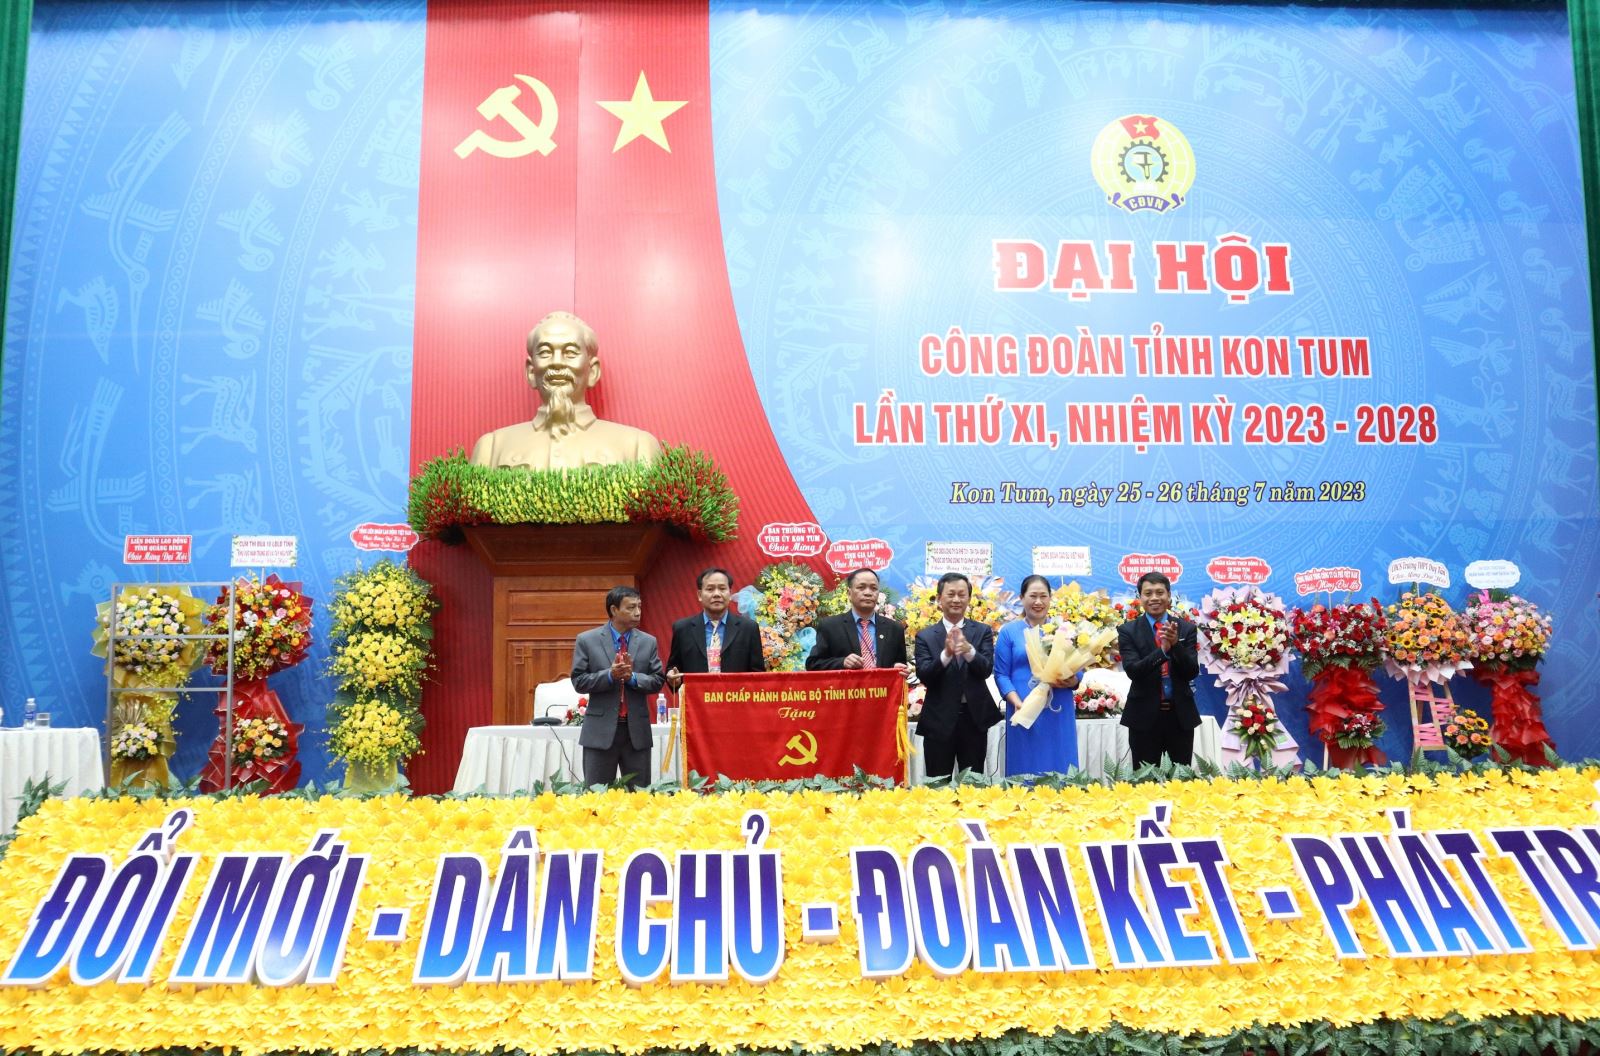 Đại hội Công đoàn tỉnh Kon Tum lần thứ XI, nhiệm kỳ 2023 - 2028